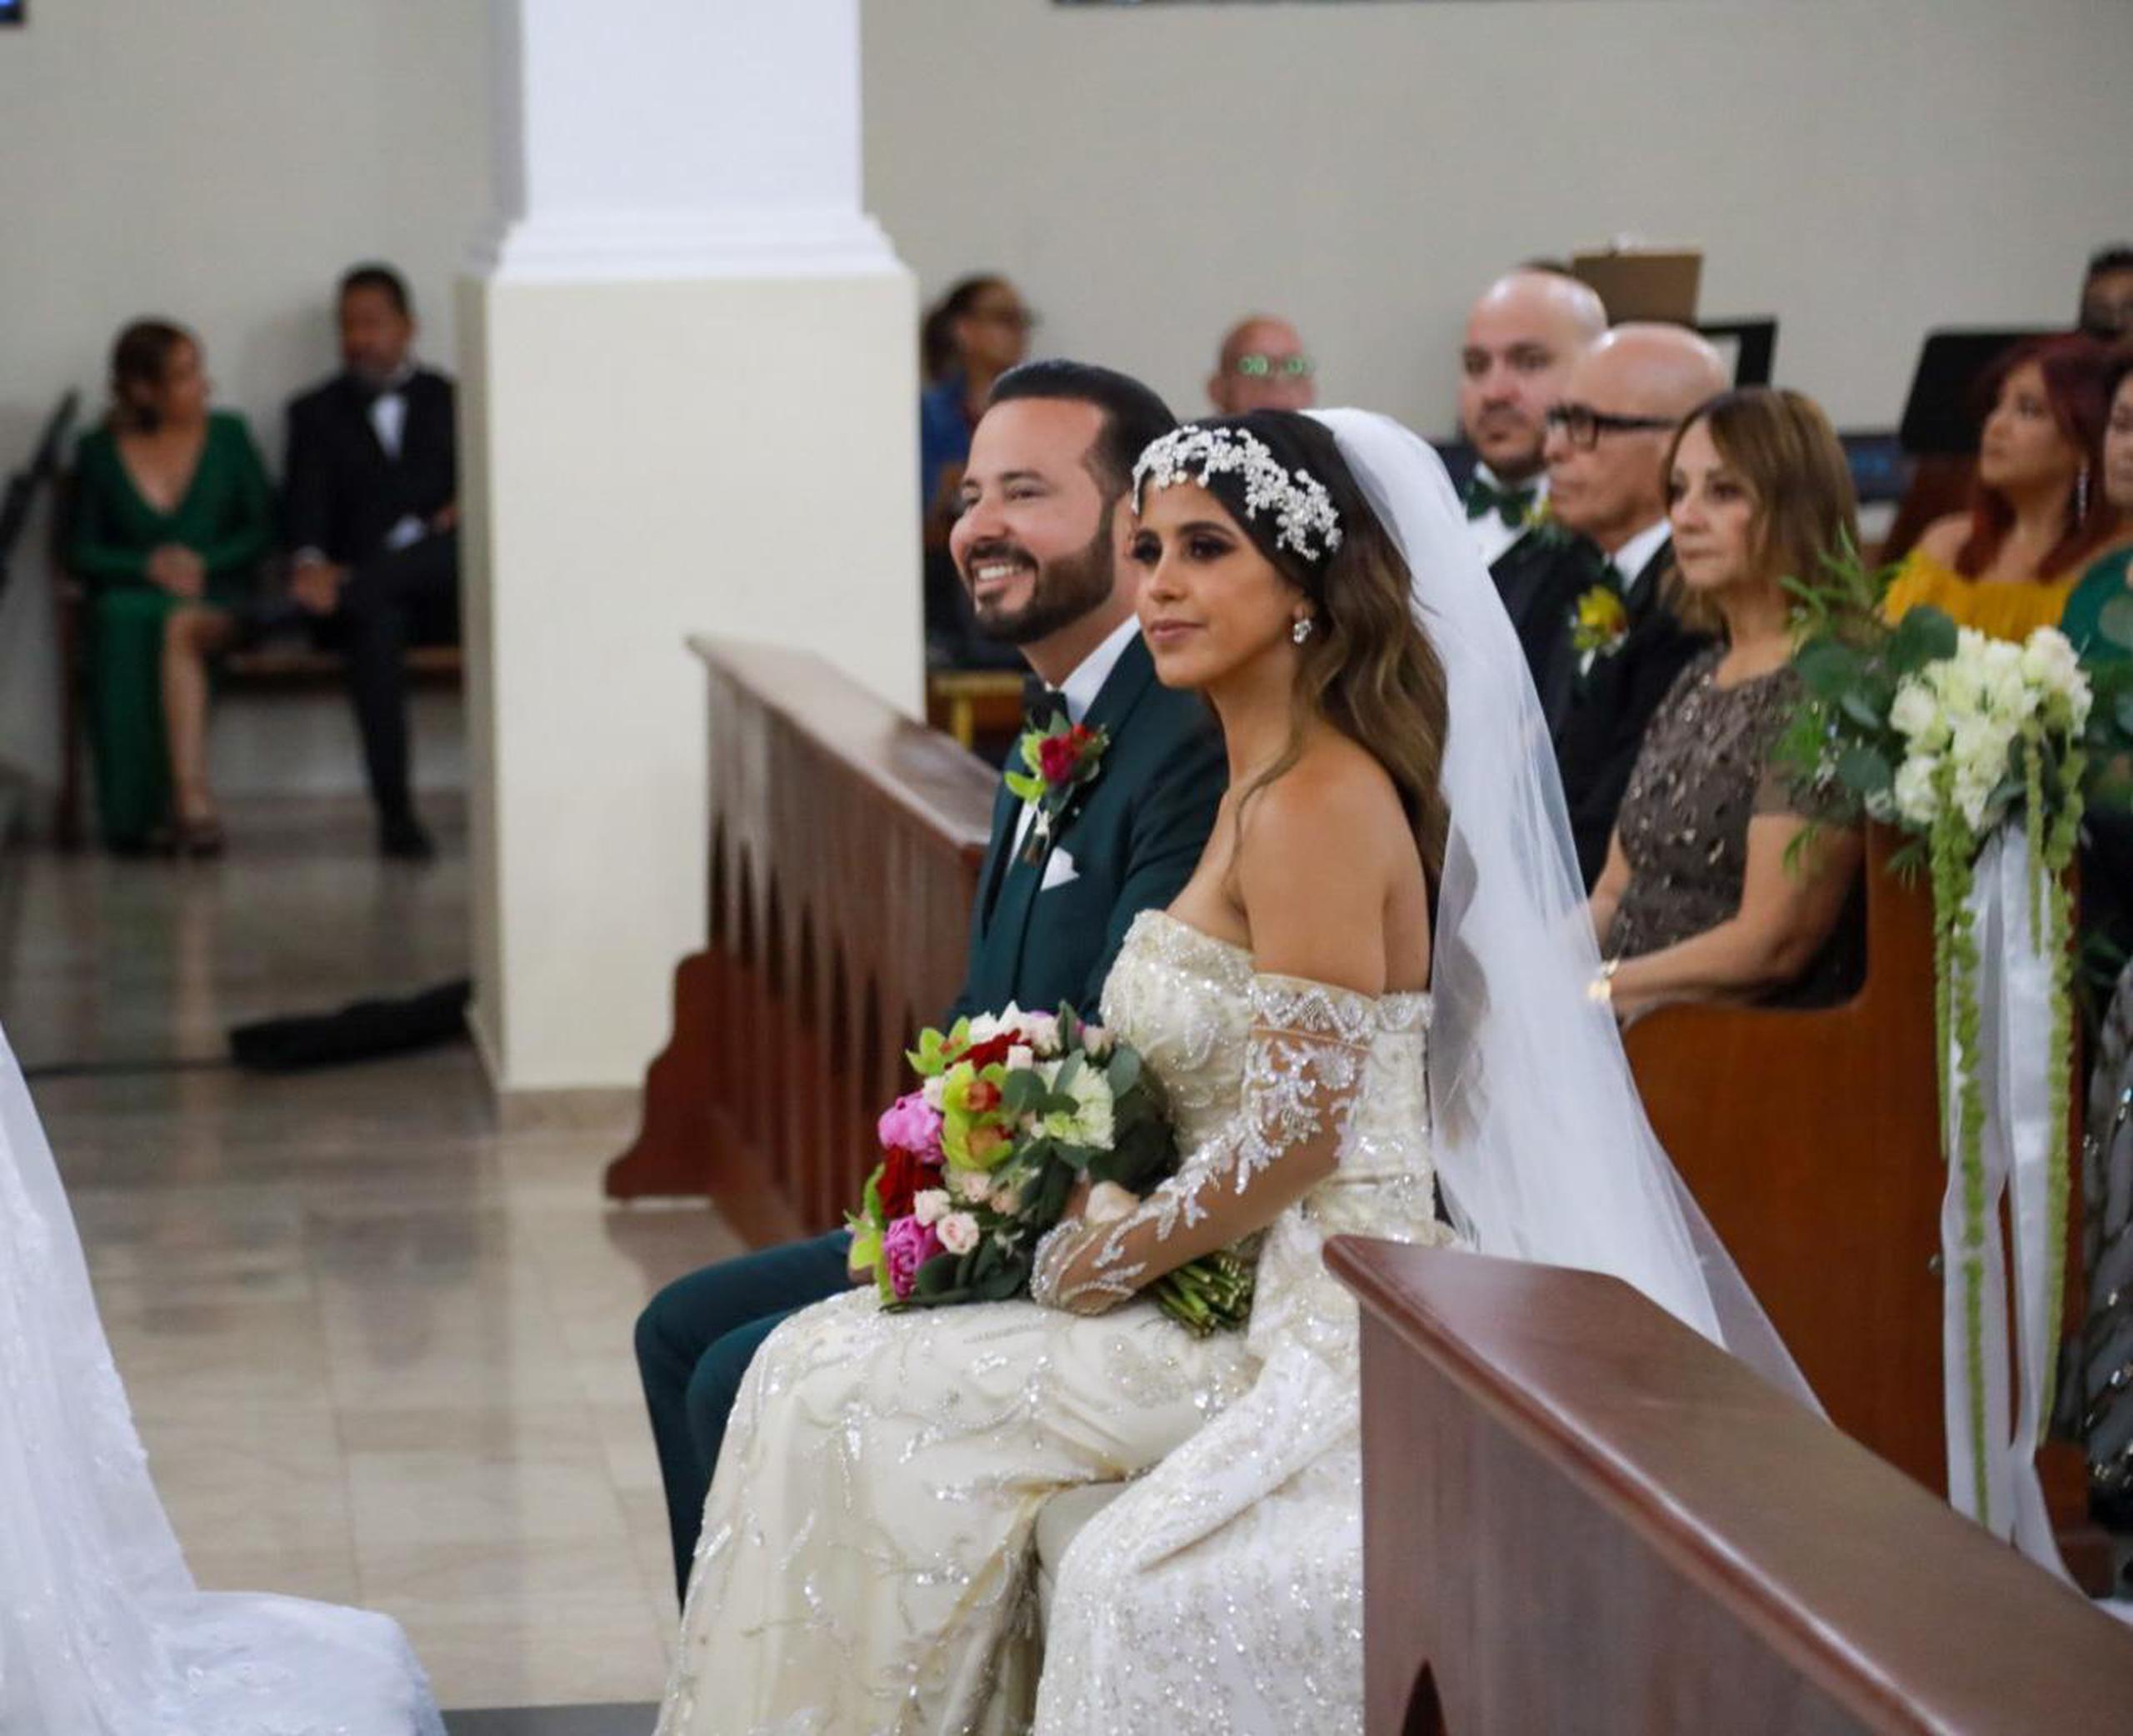 El alcalde de Villalba, Luis Javier Hernández Ortiz, contrajó matrimonio con la empresaria Veggie Vanessa Vargas Santiago, en una ceremonia con un público módico en la Parroquia Nuestra Señora del Carmen.